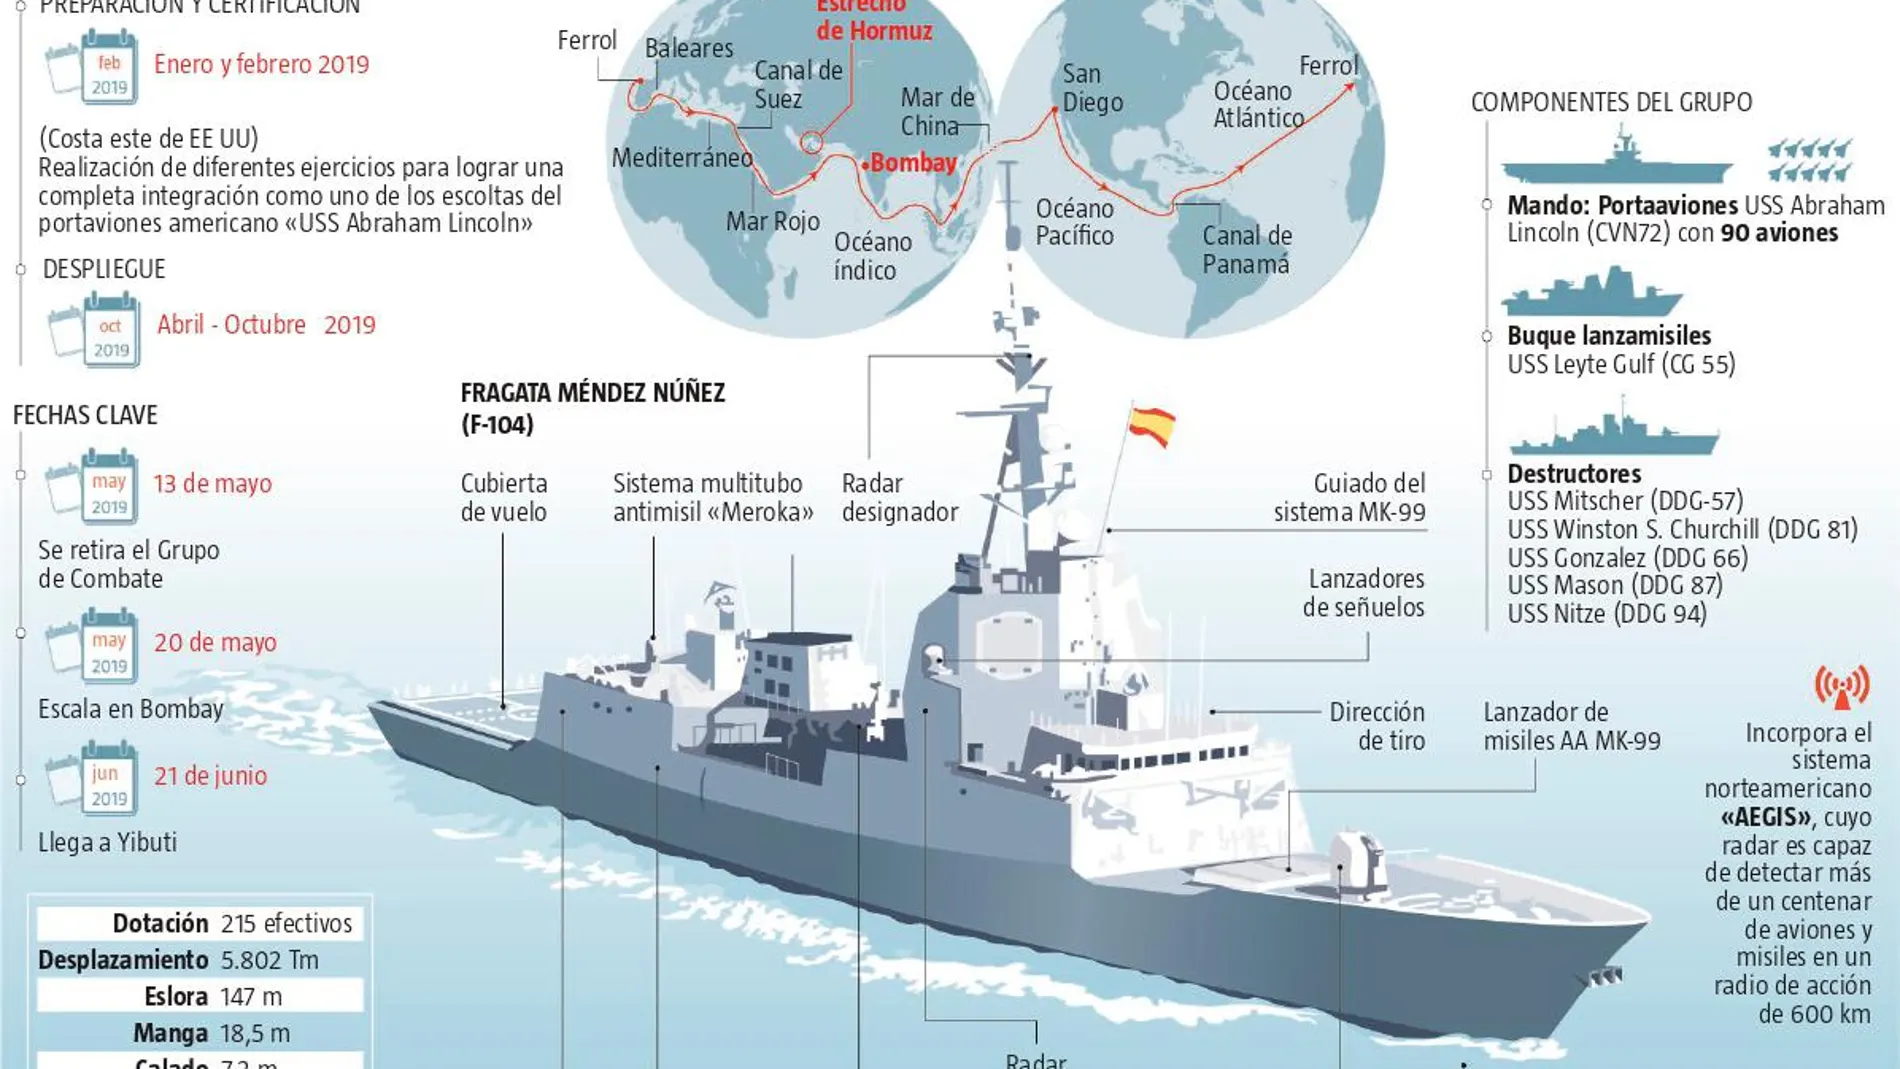 Las tensiones entre Estados Unidos e Irán provocaron el abandono de la fragata española desplegada en el Golfo